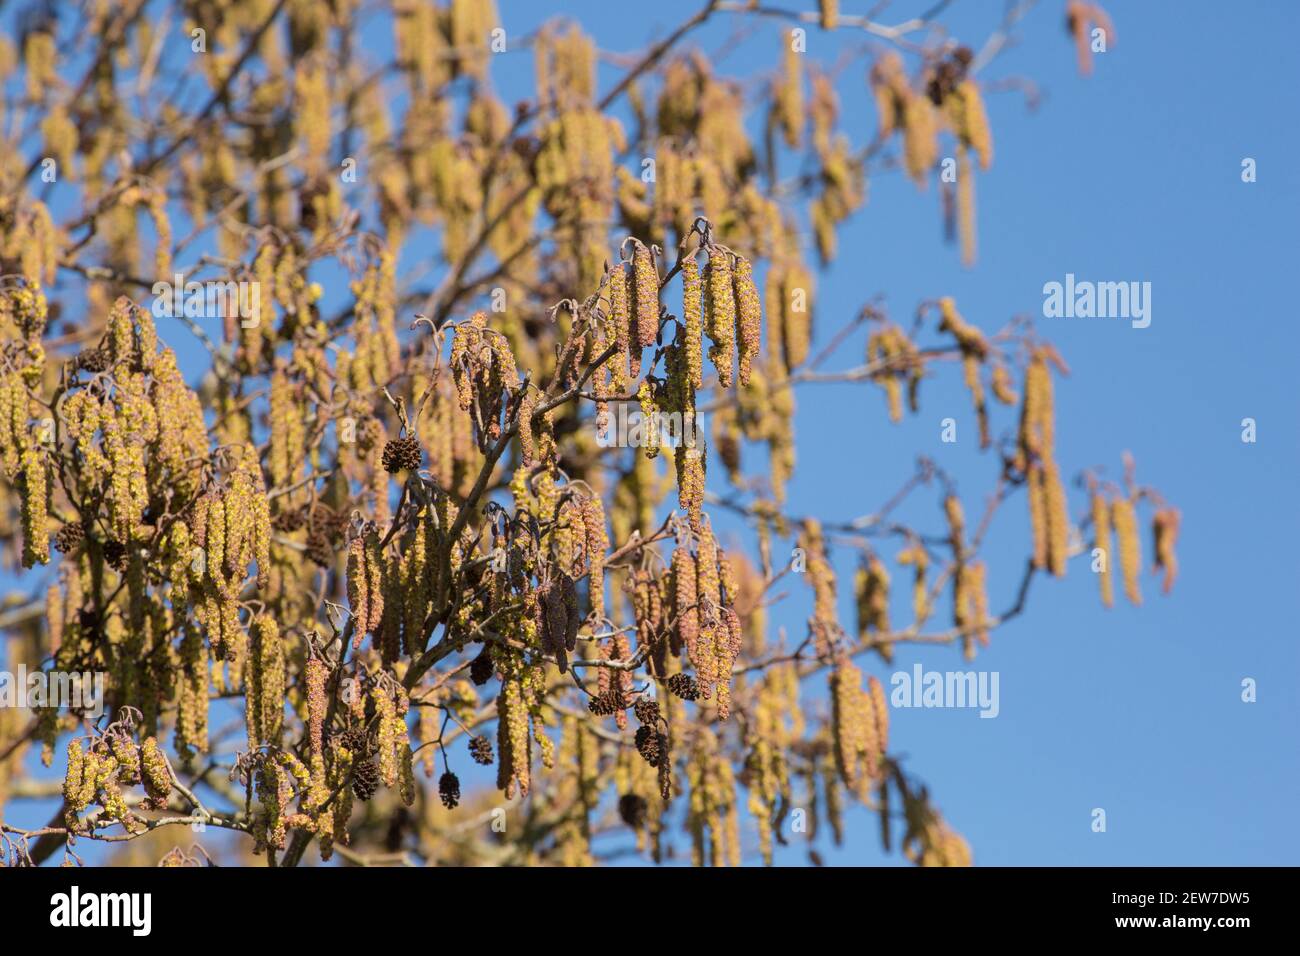 Un árbol de aliso, Alnus glutinosa, en el sol de febrero mostrando las amentos masculinos. Las flores femeninas crecen en los mismos tallos que las catenetas masculinas. Dor. Norte Foto de stock